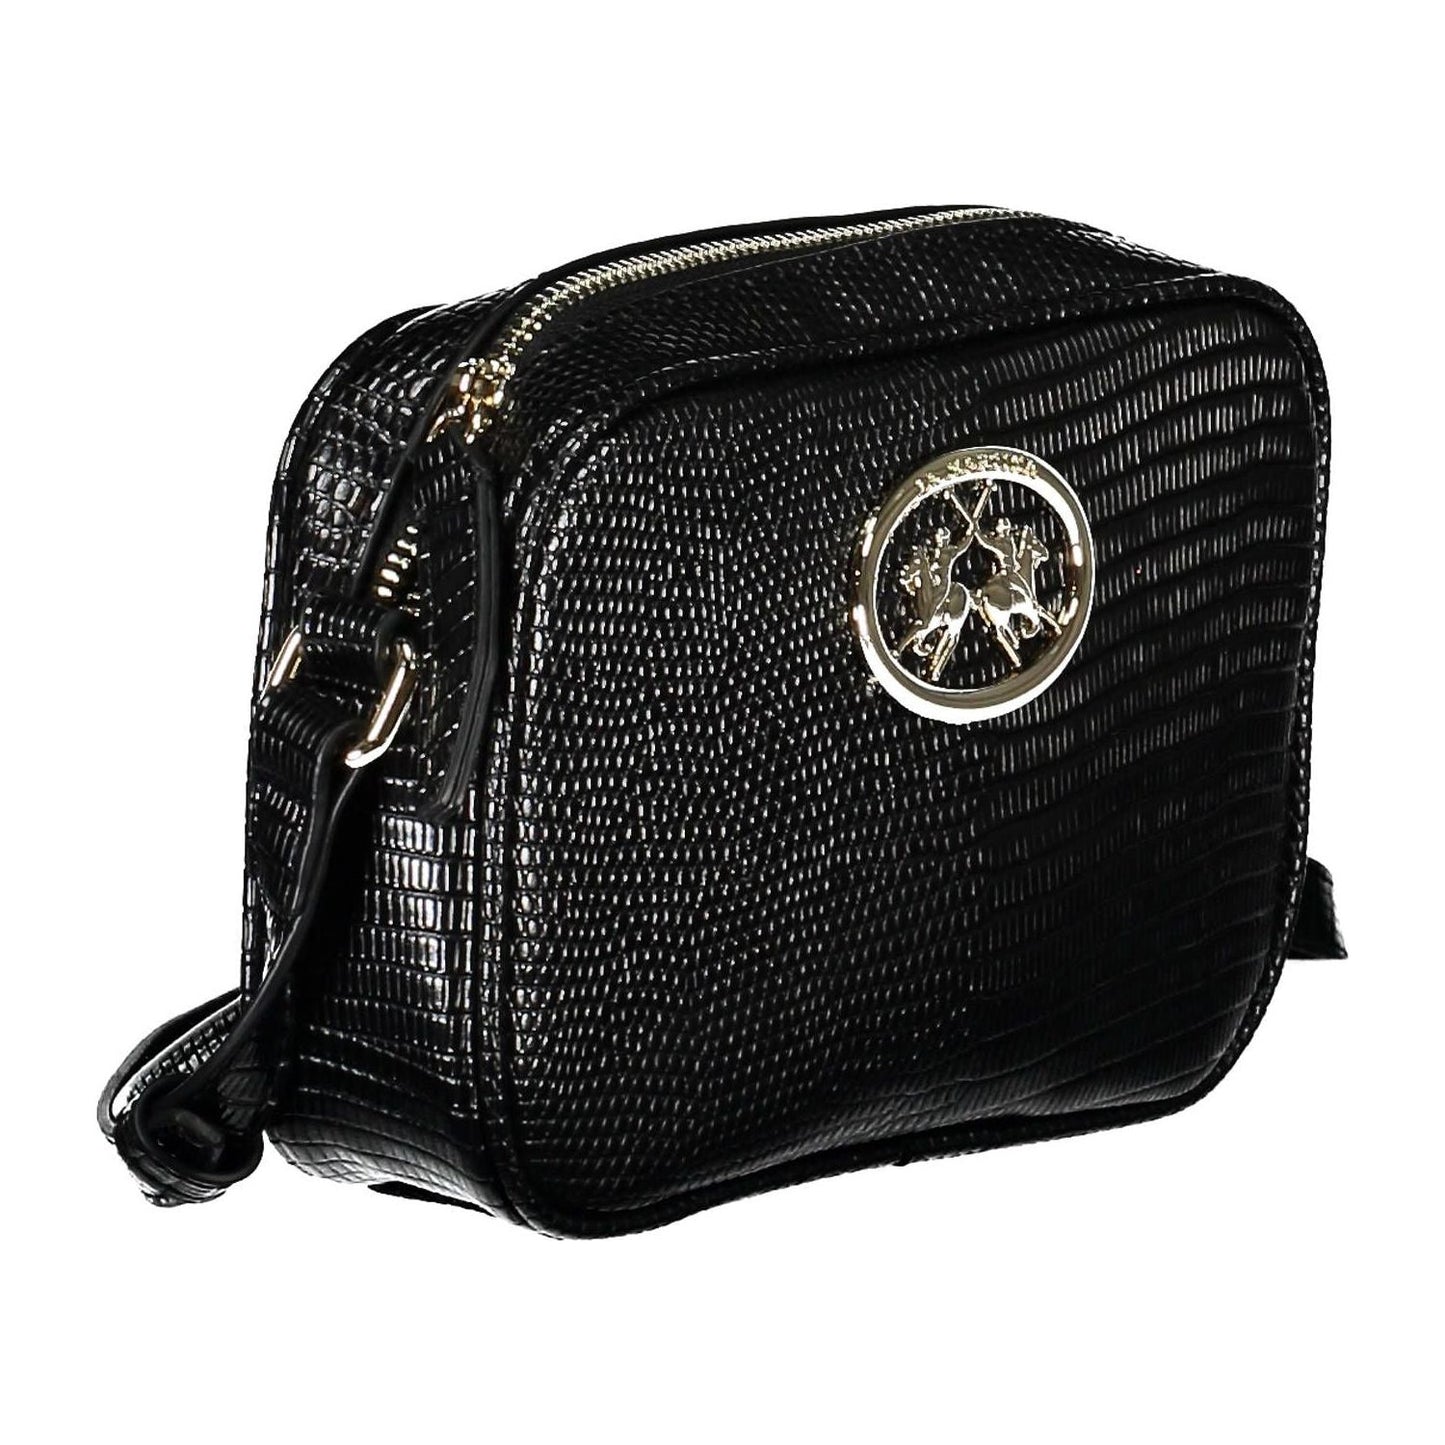 La Martina | Sleek Black Shoulder Bag with Contrasting Details| McRichard Designer Brands   